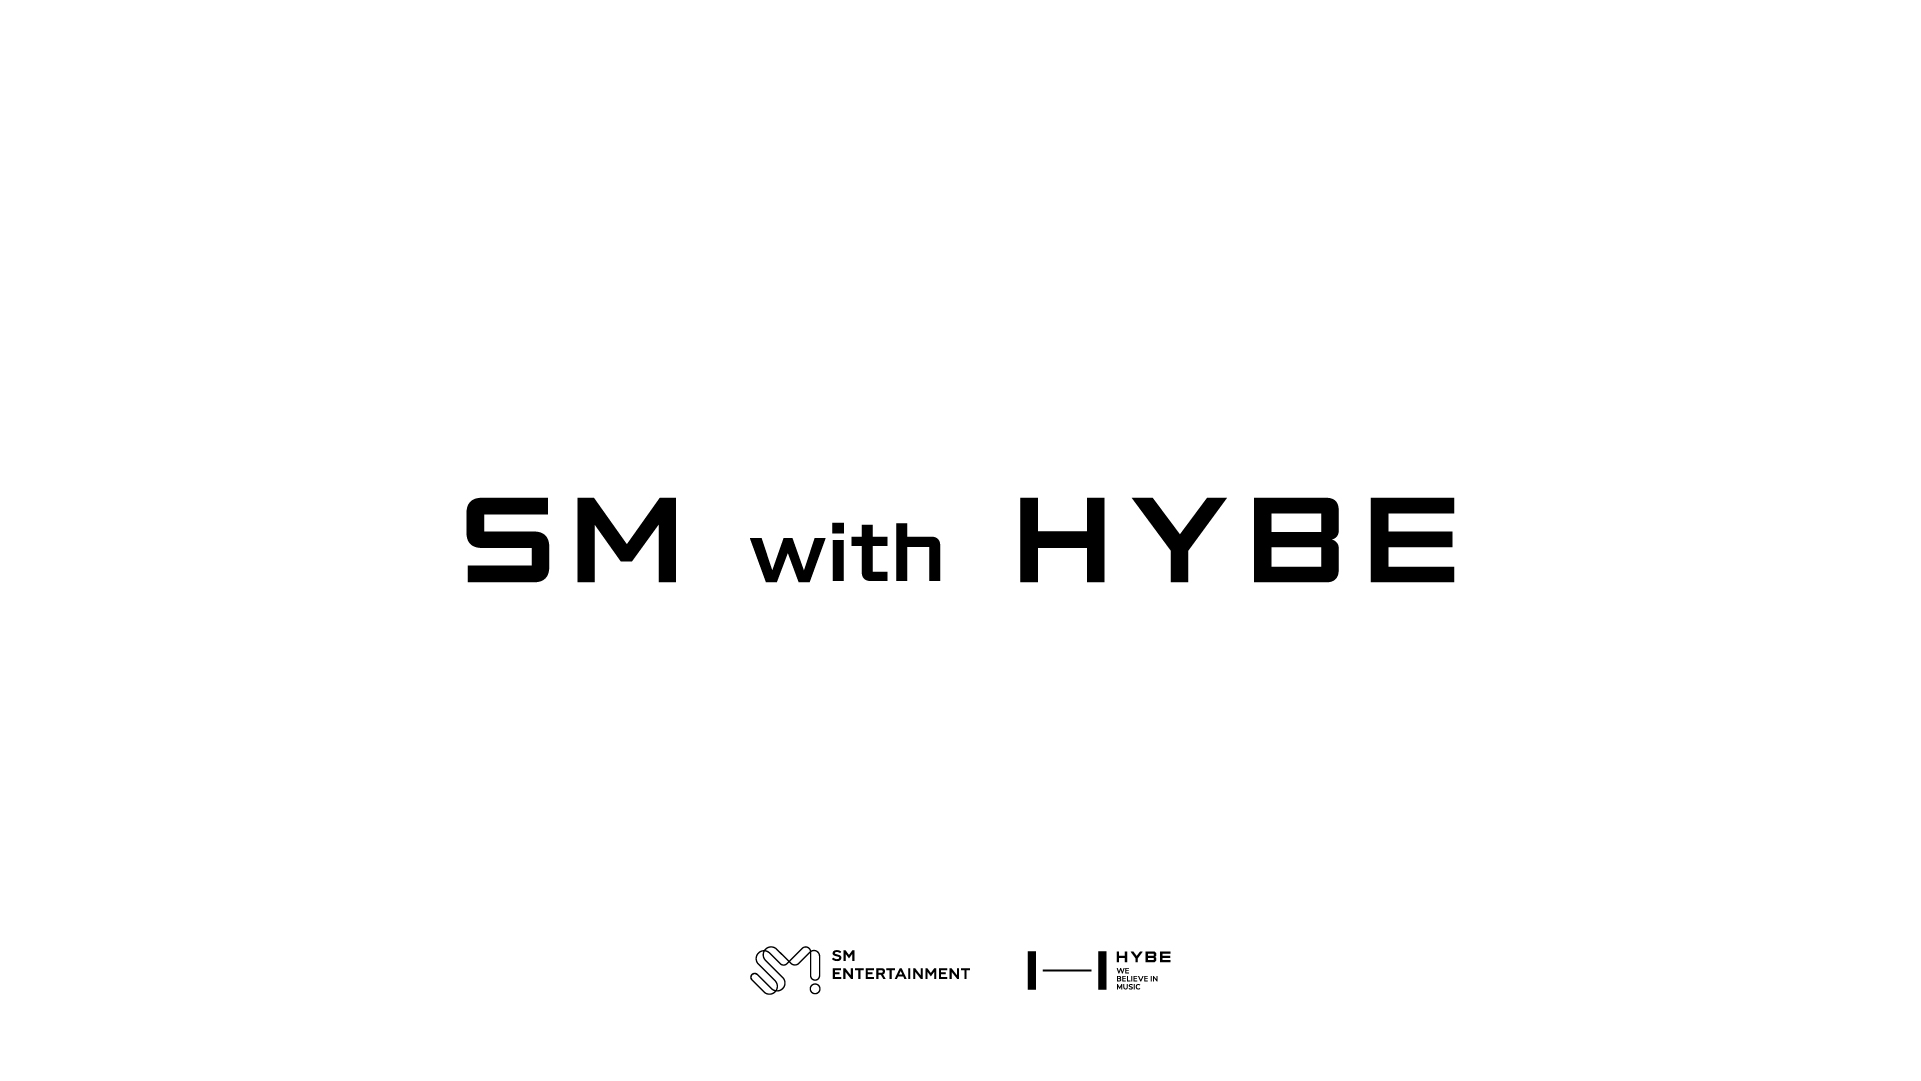 HYBE lanza la campana SM With HYBE cita comparaciones del